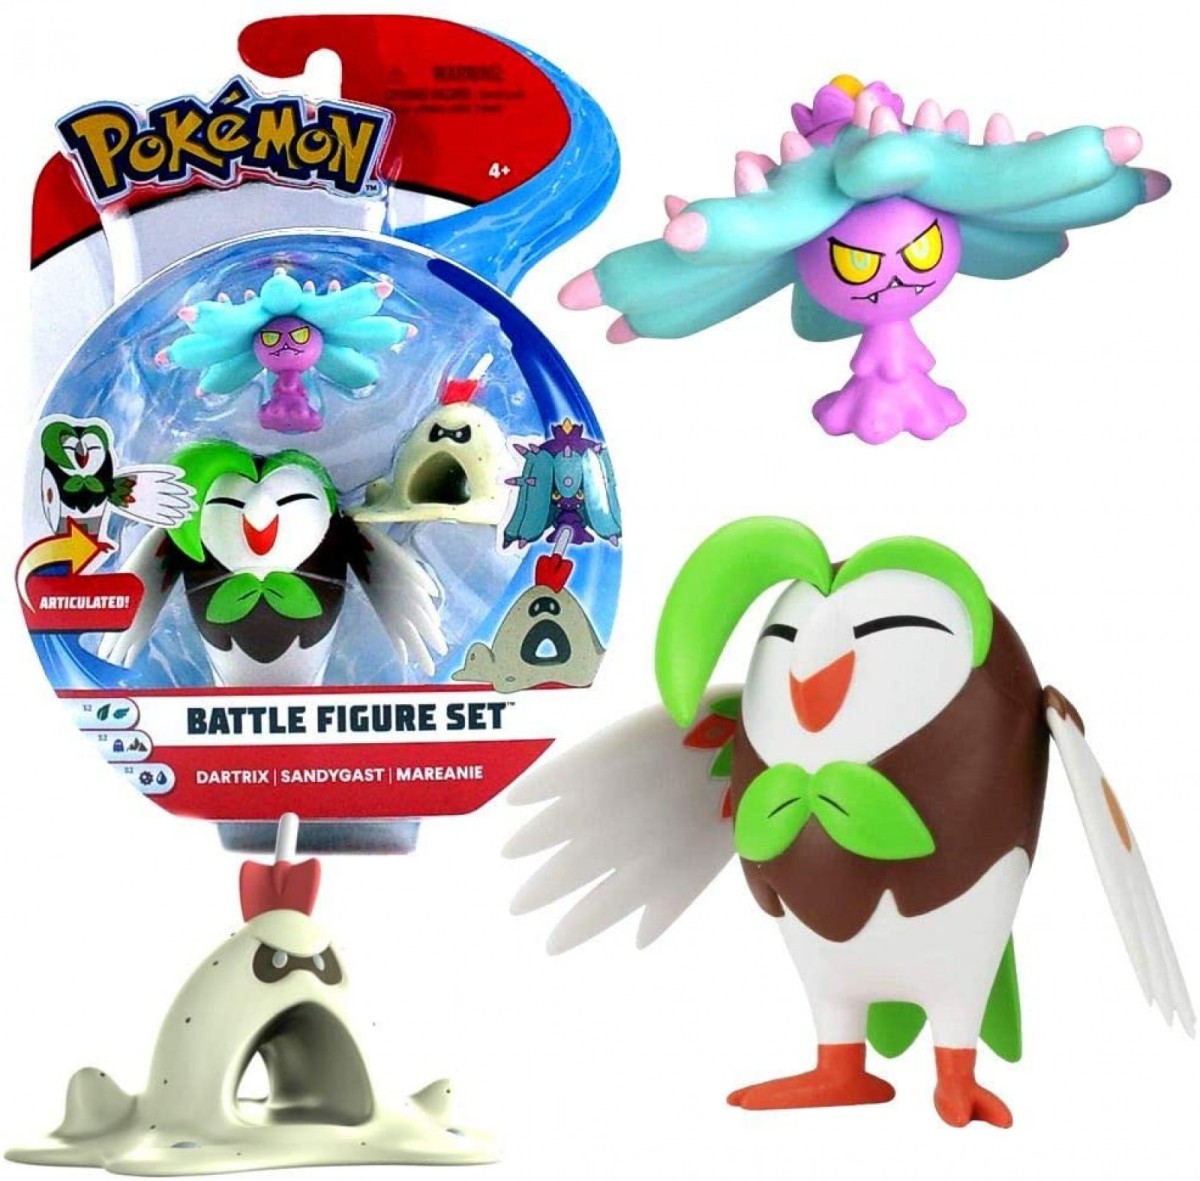 Pokémon Pokemon Battle Figure Set Dartrix Sandygast Marea Originale Ufficiale 